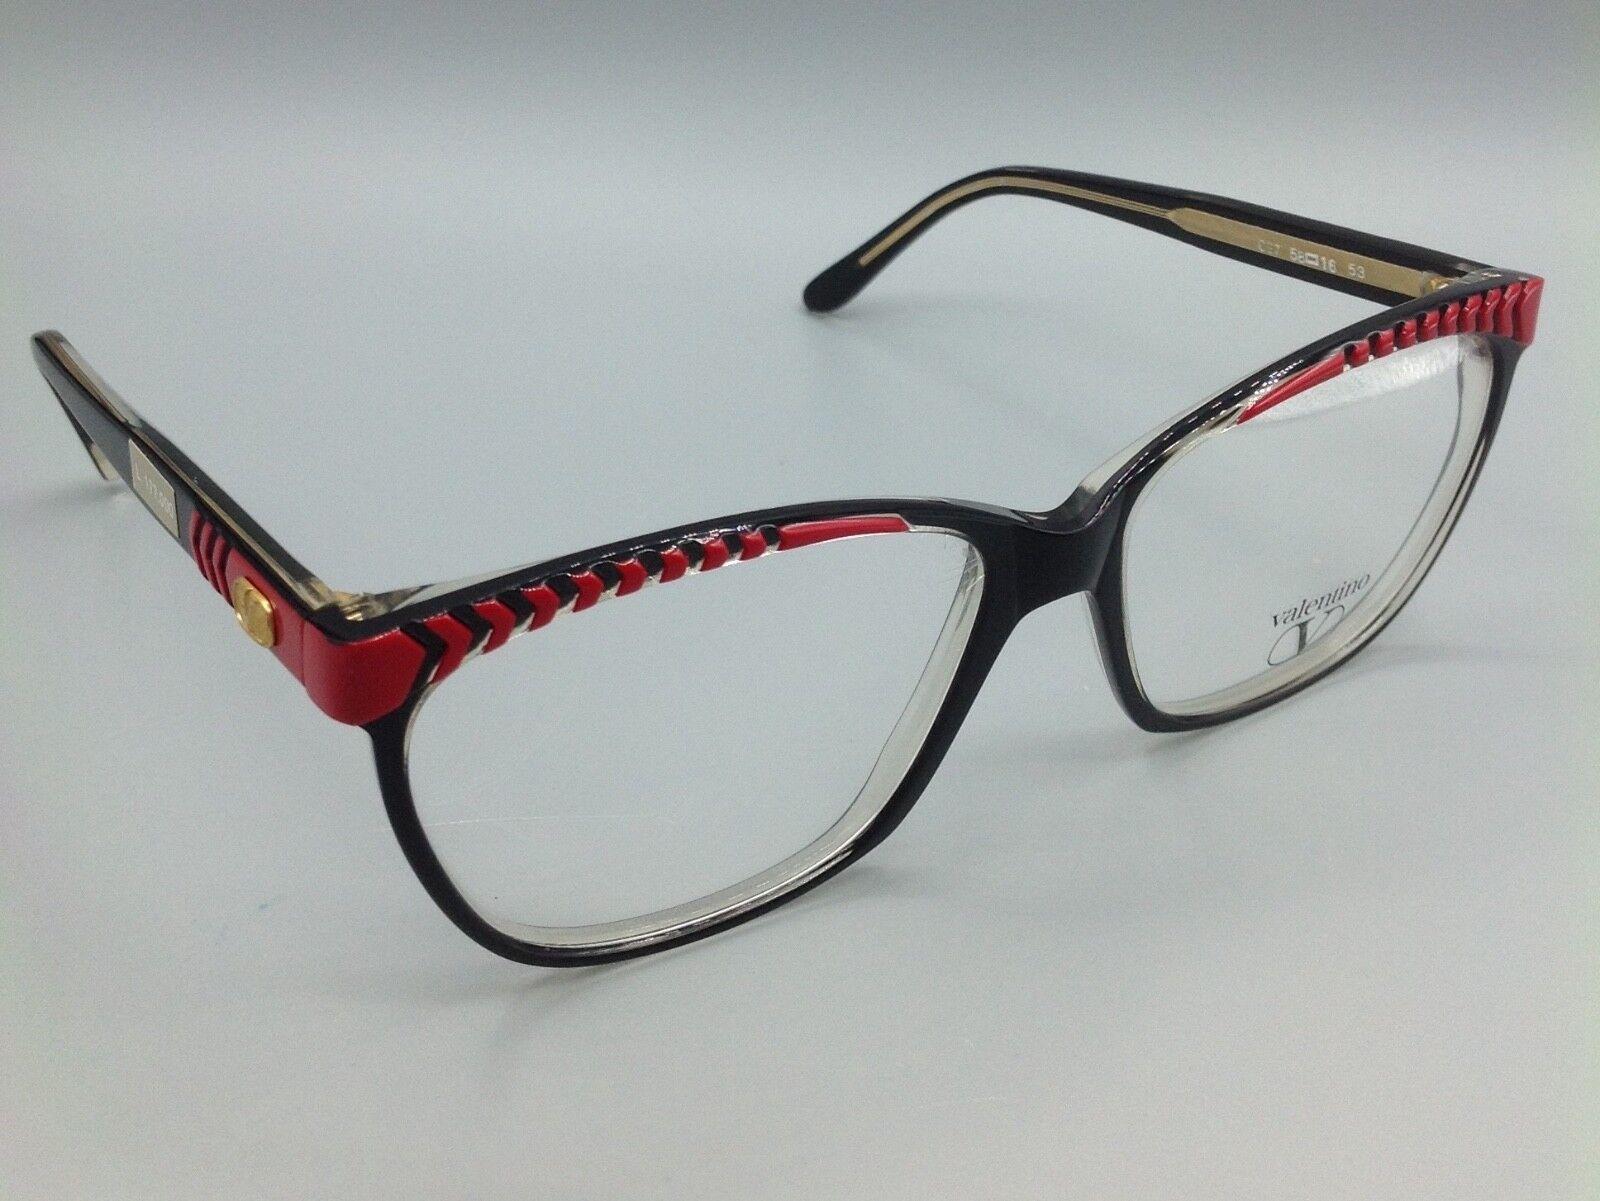 Valentino vintage occhiale model C27 eyewear brillen lunettes gafas